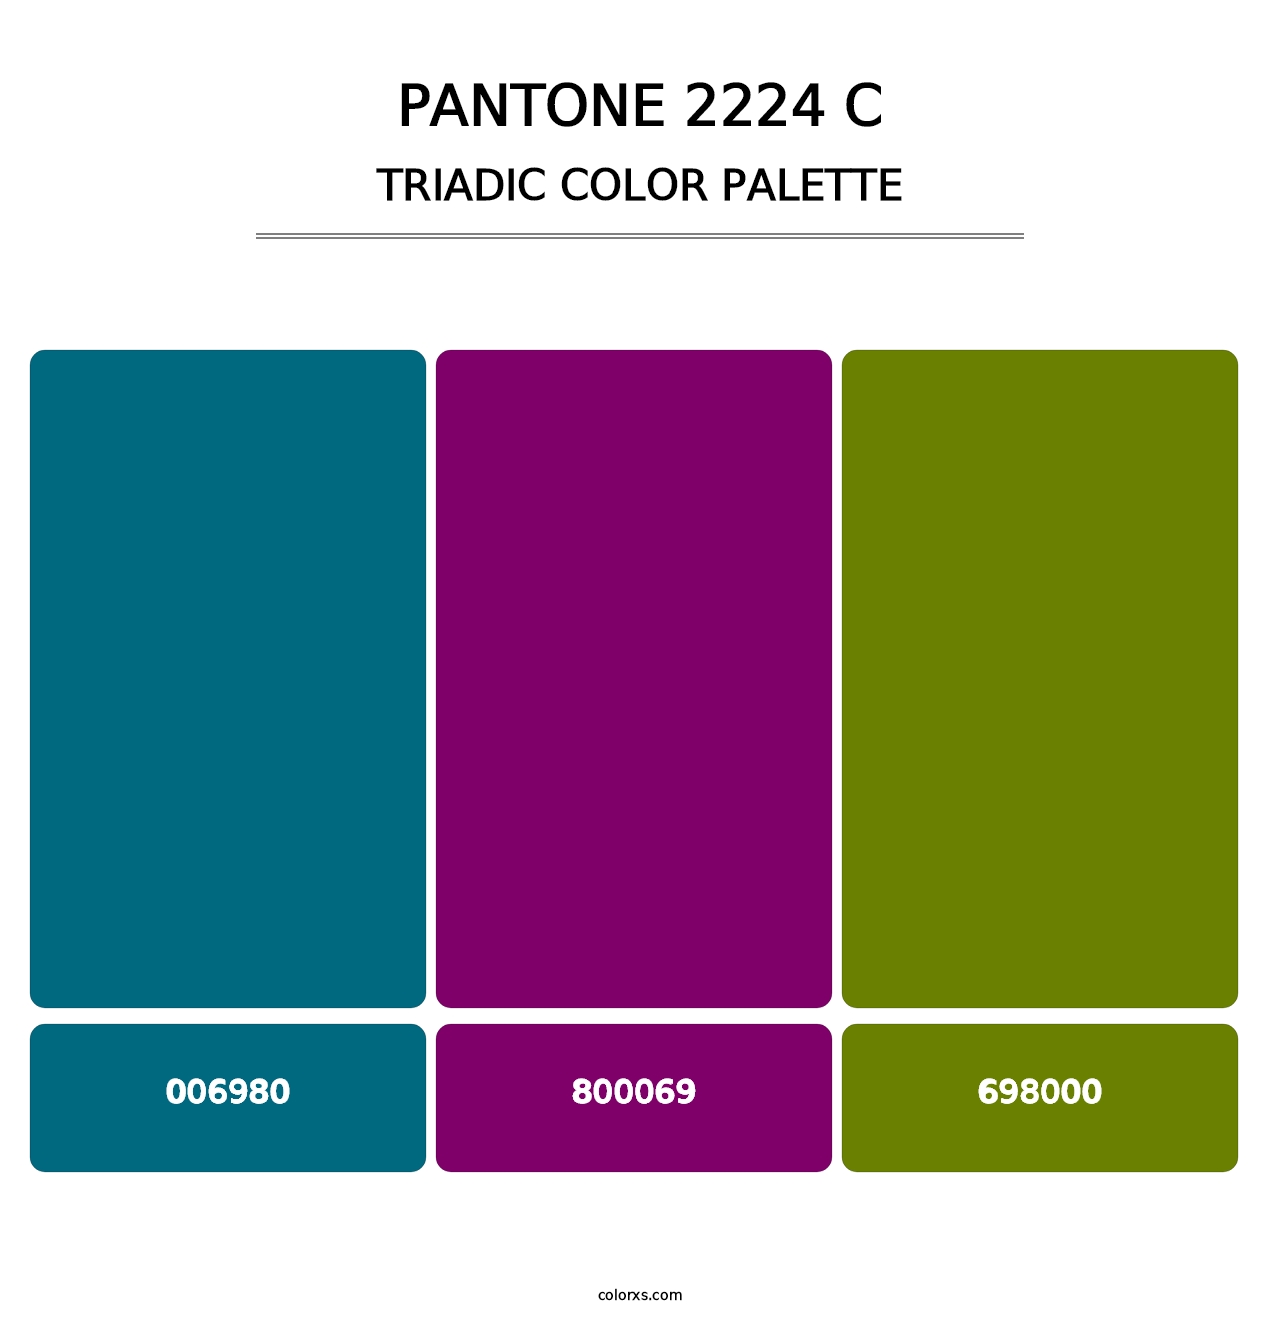 PANTONE 2224 C - Triadic Color Palette